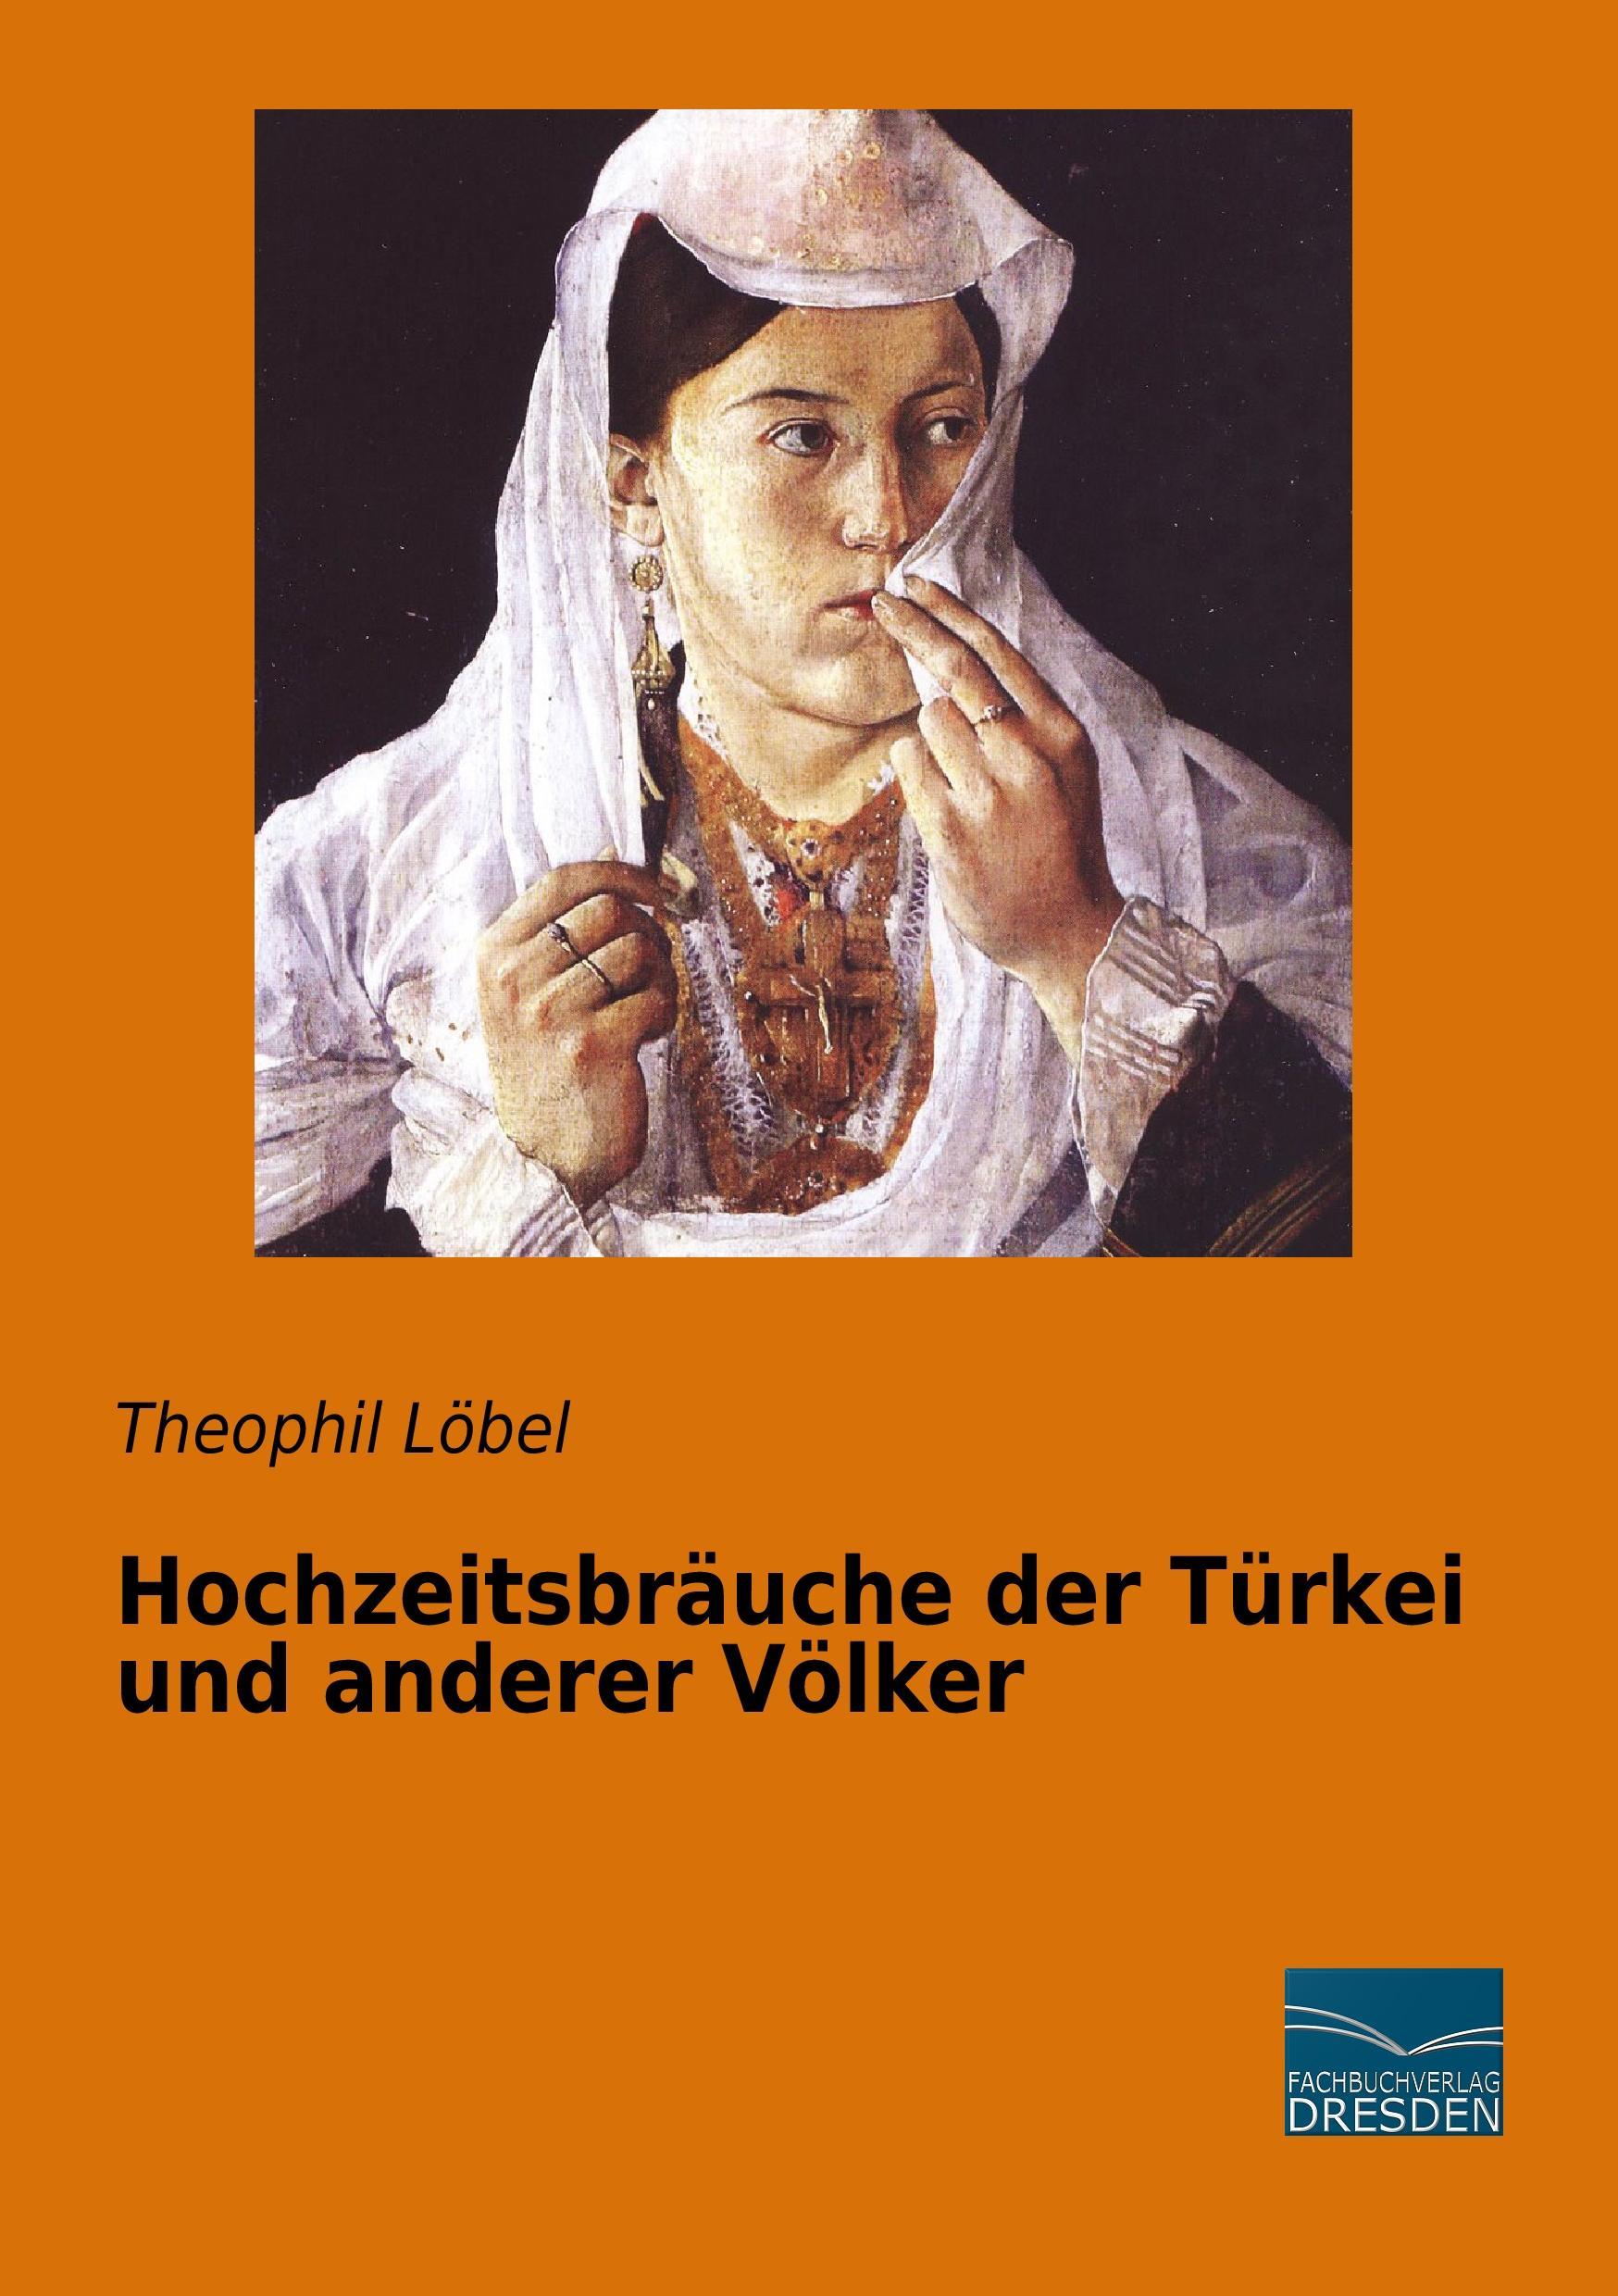 Hochzeitsbräuche der Türkei und anderer Völker Theophil Löbel - Afbeelding 1 van 1